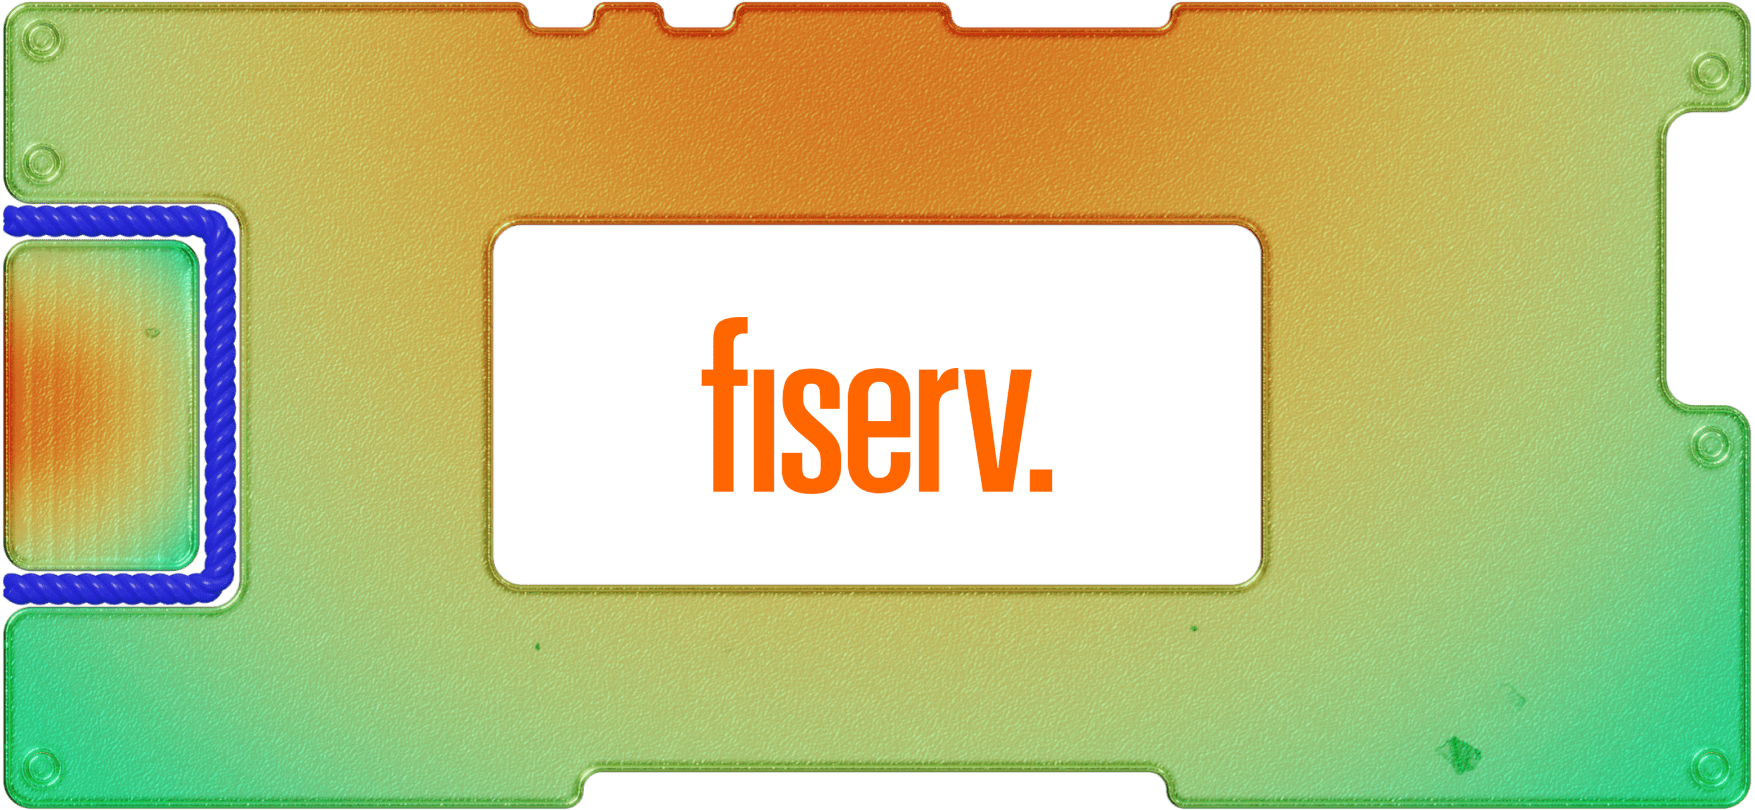 Проведение платежей и другие неприятности: инвестируем в Fiserv